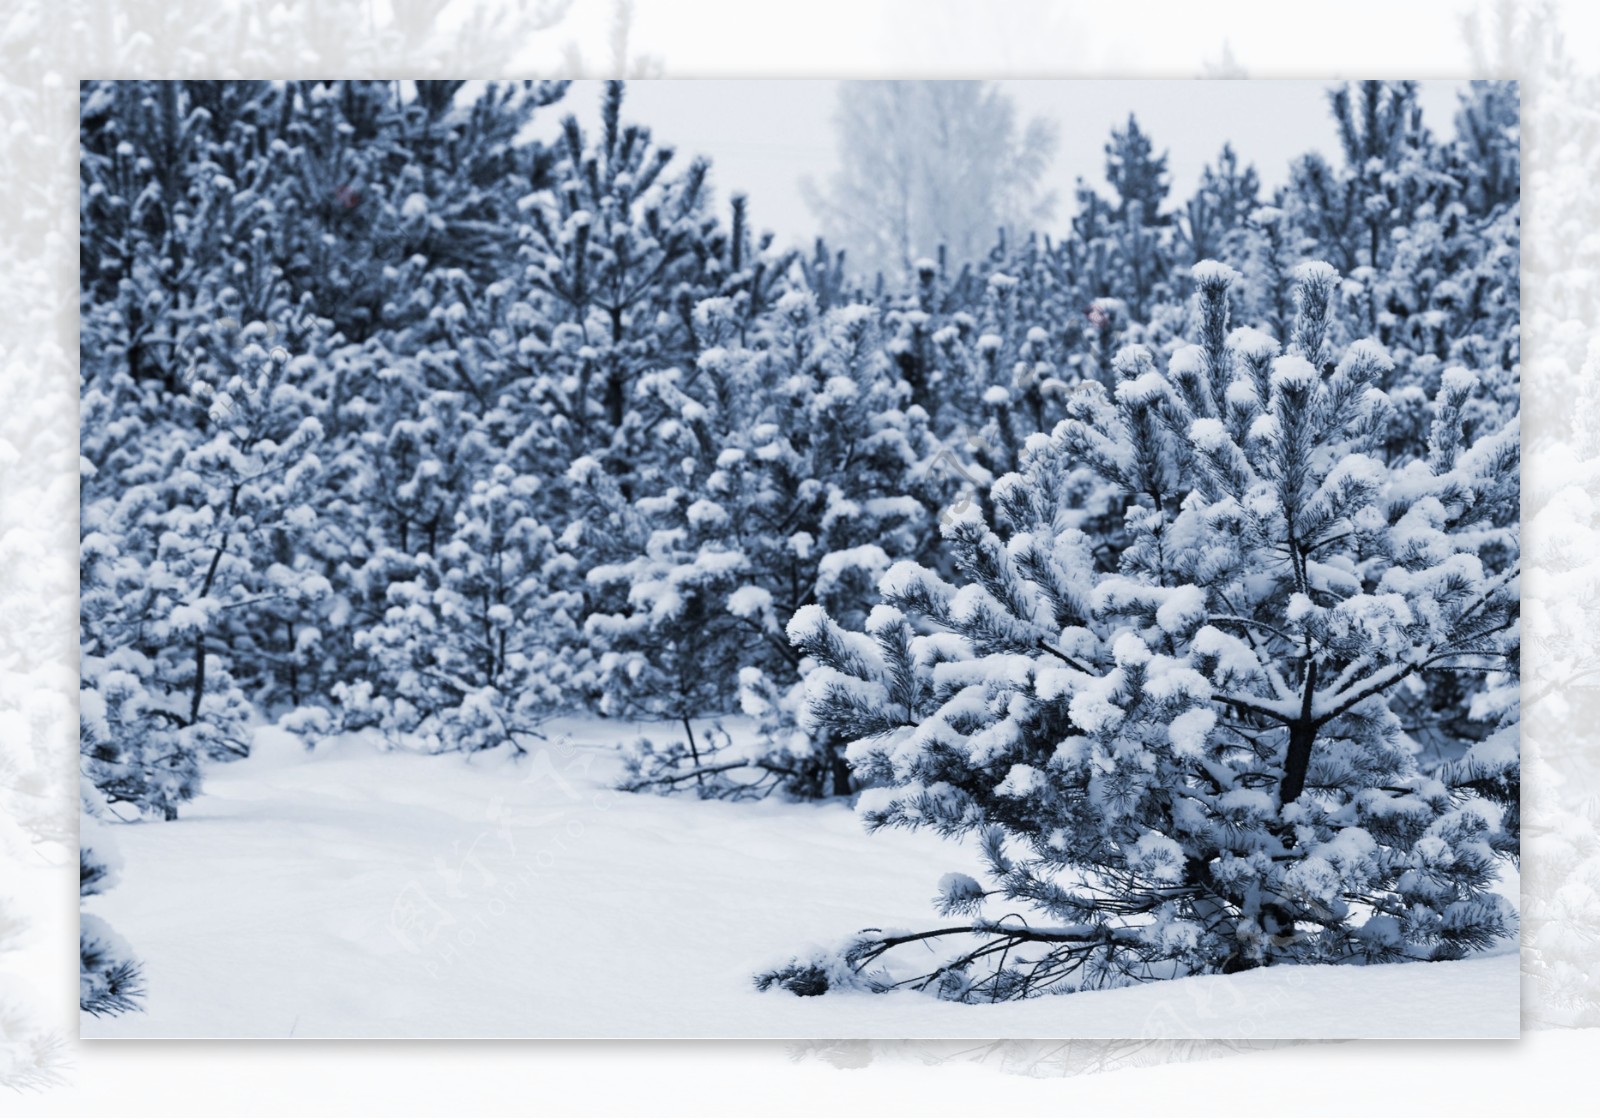 树林雪地风景图片